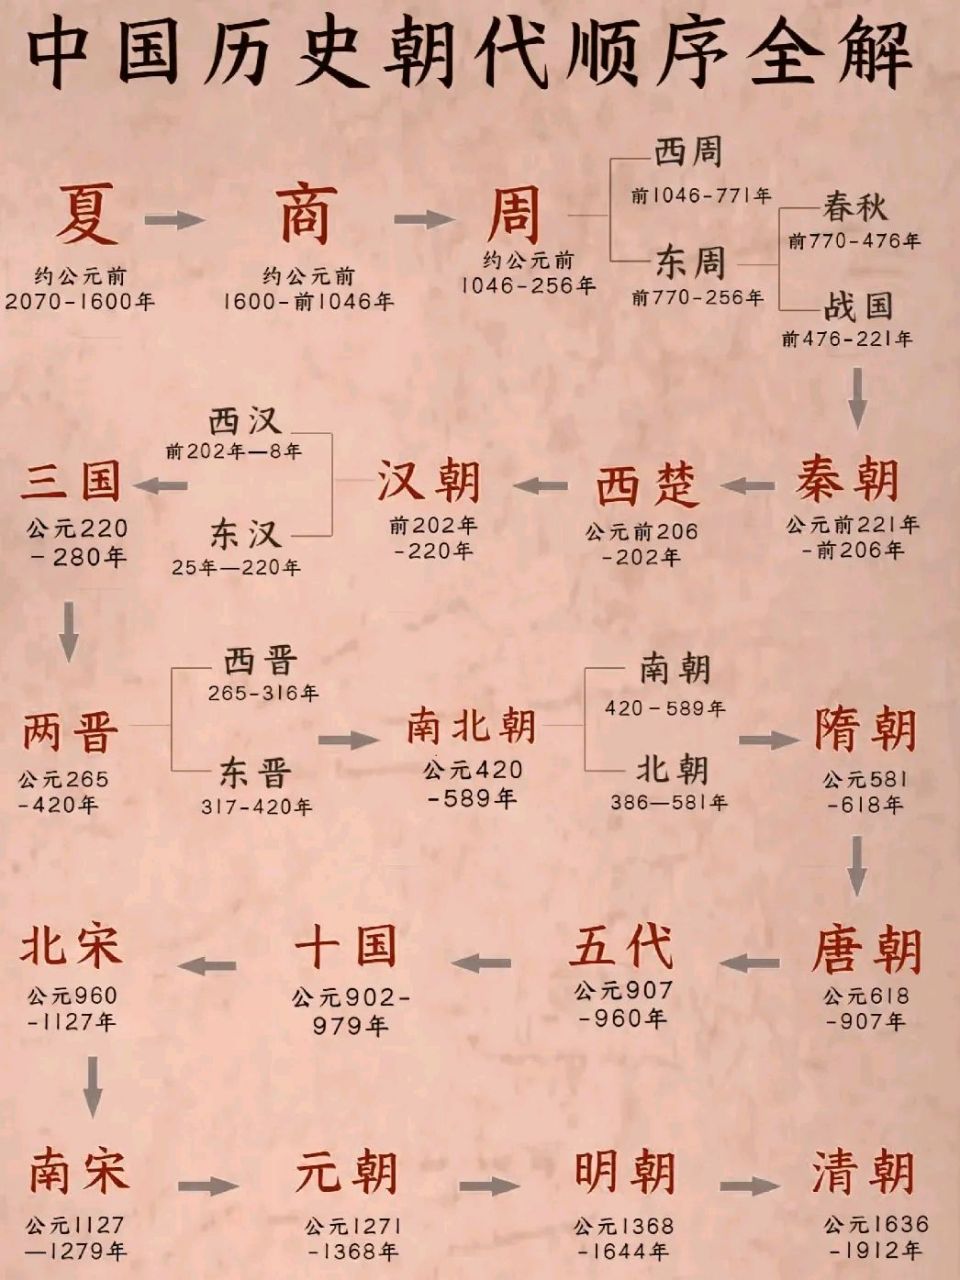 三分钟看懂了中华5000年上下历史顺序 中华5000年历史,你了解多少?